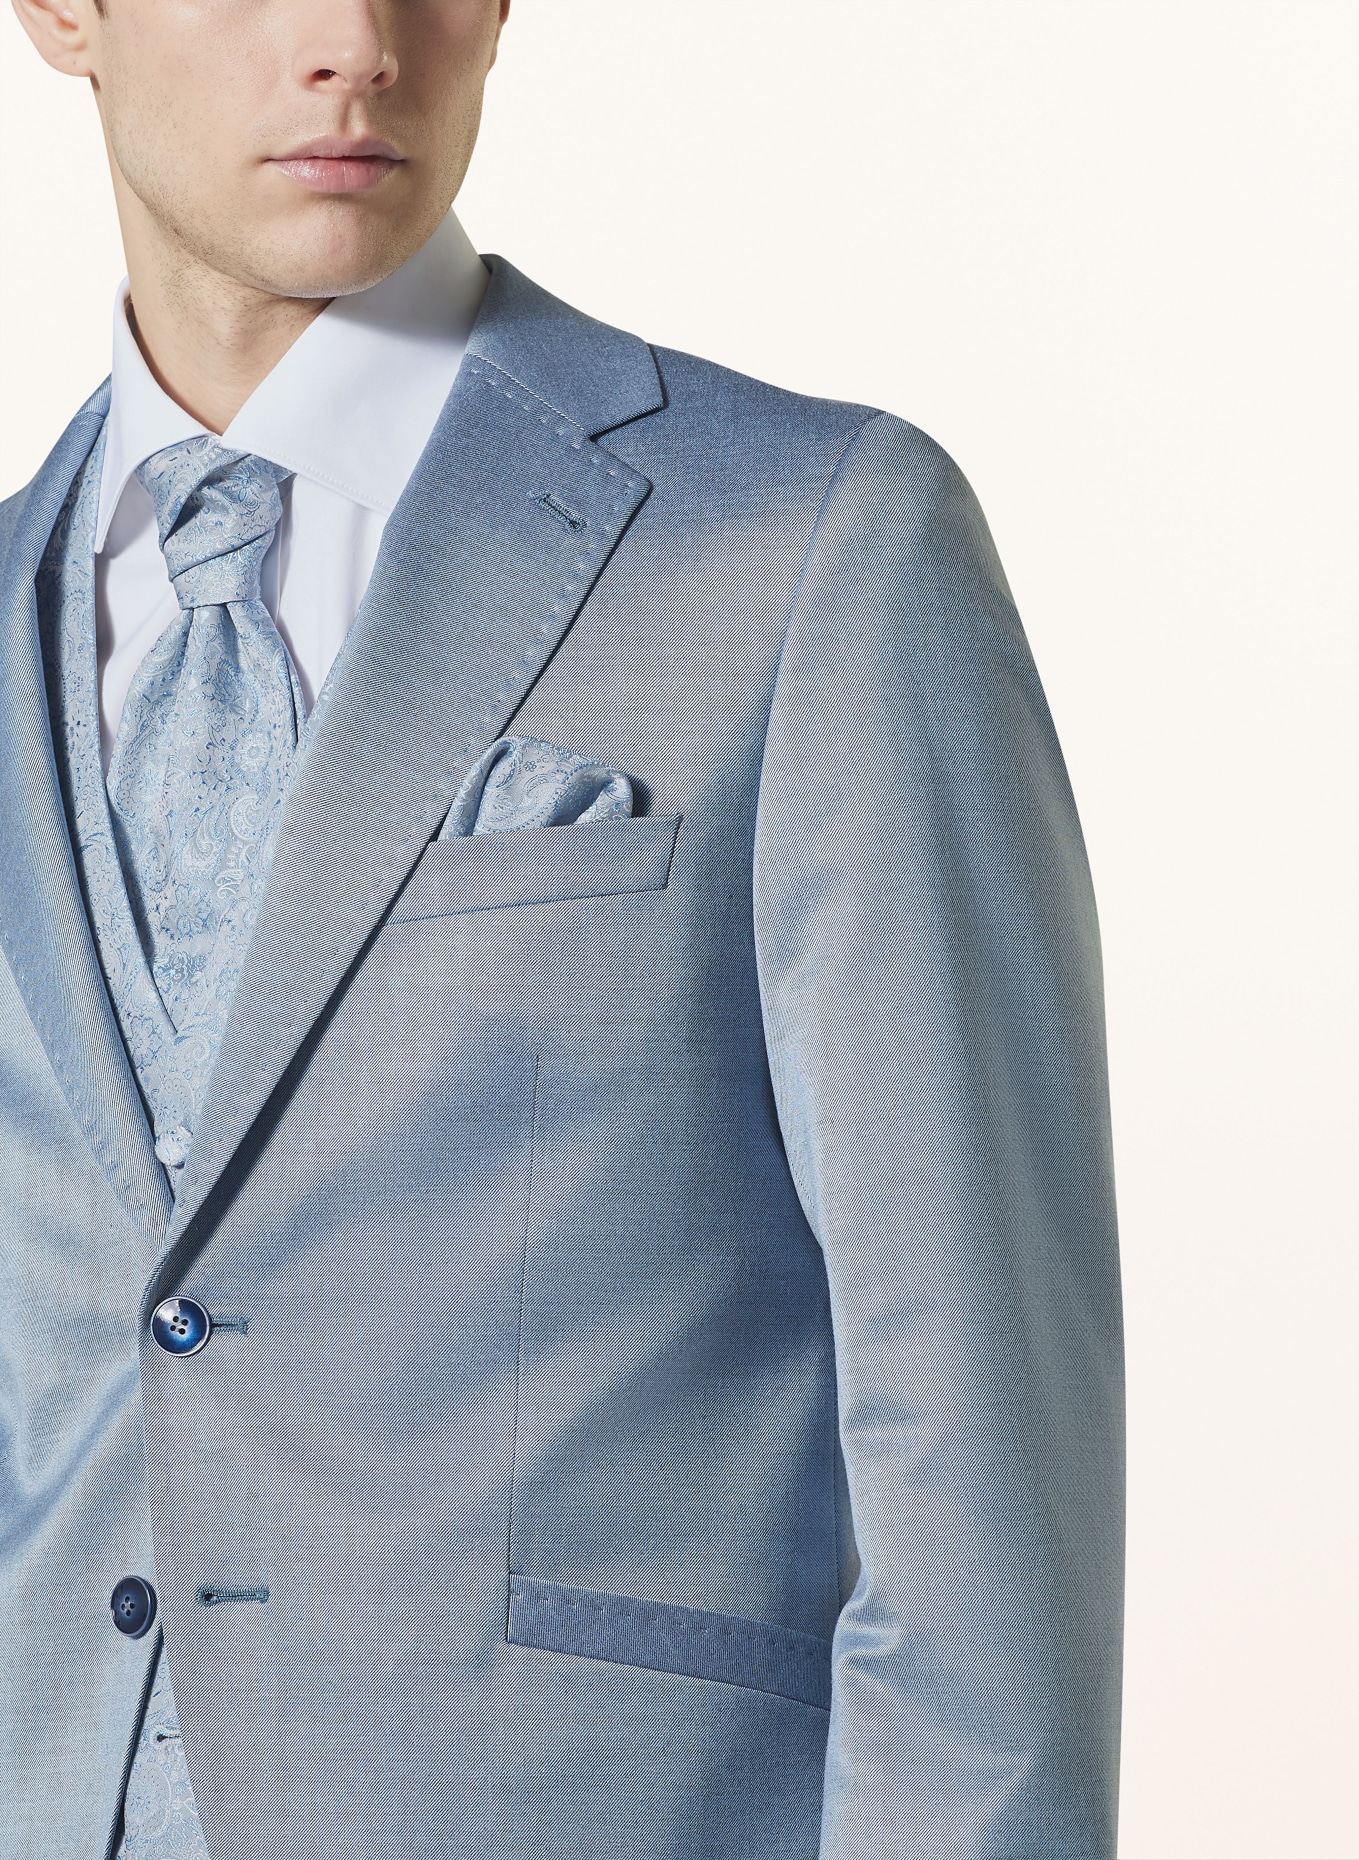 WILVORST Suit jacket extra slim fit, Color: LIGHT BLUE (Image 5)